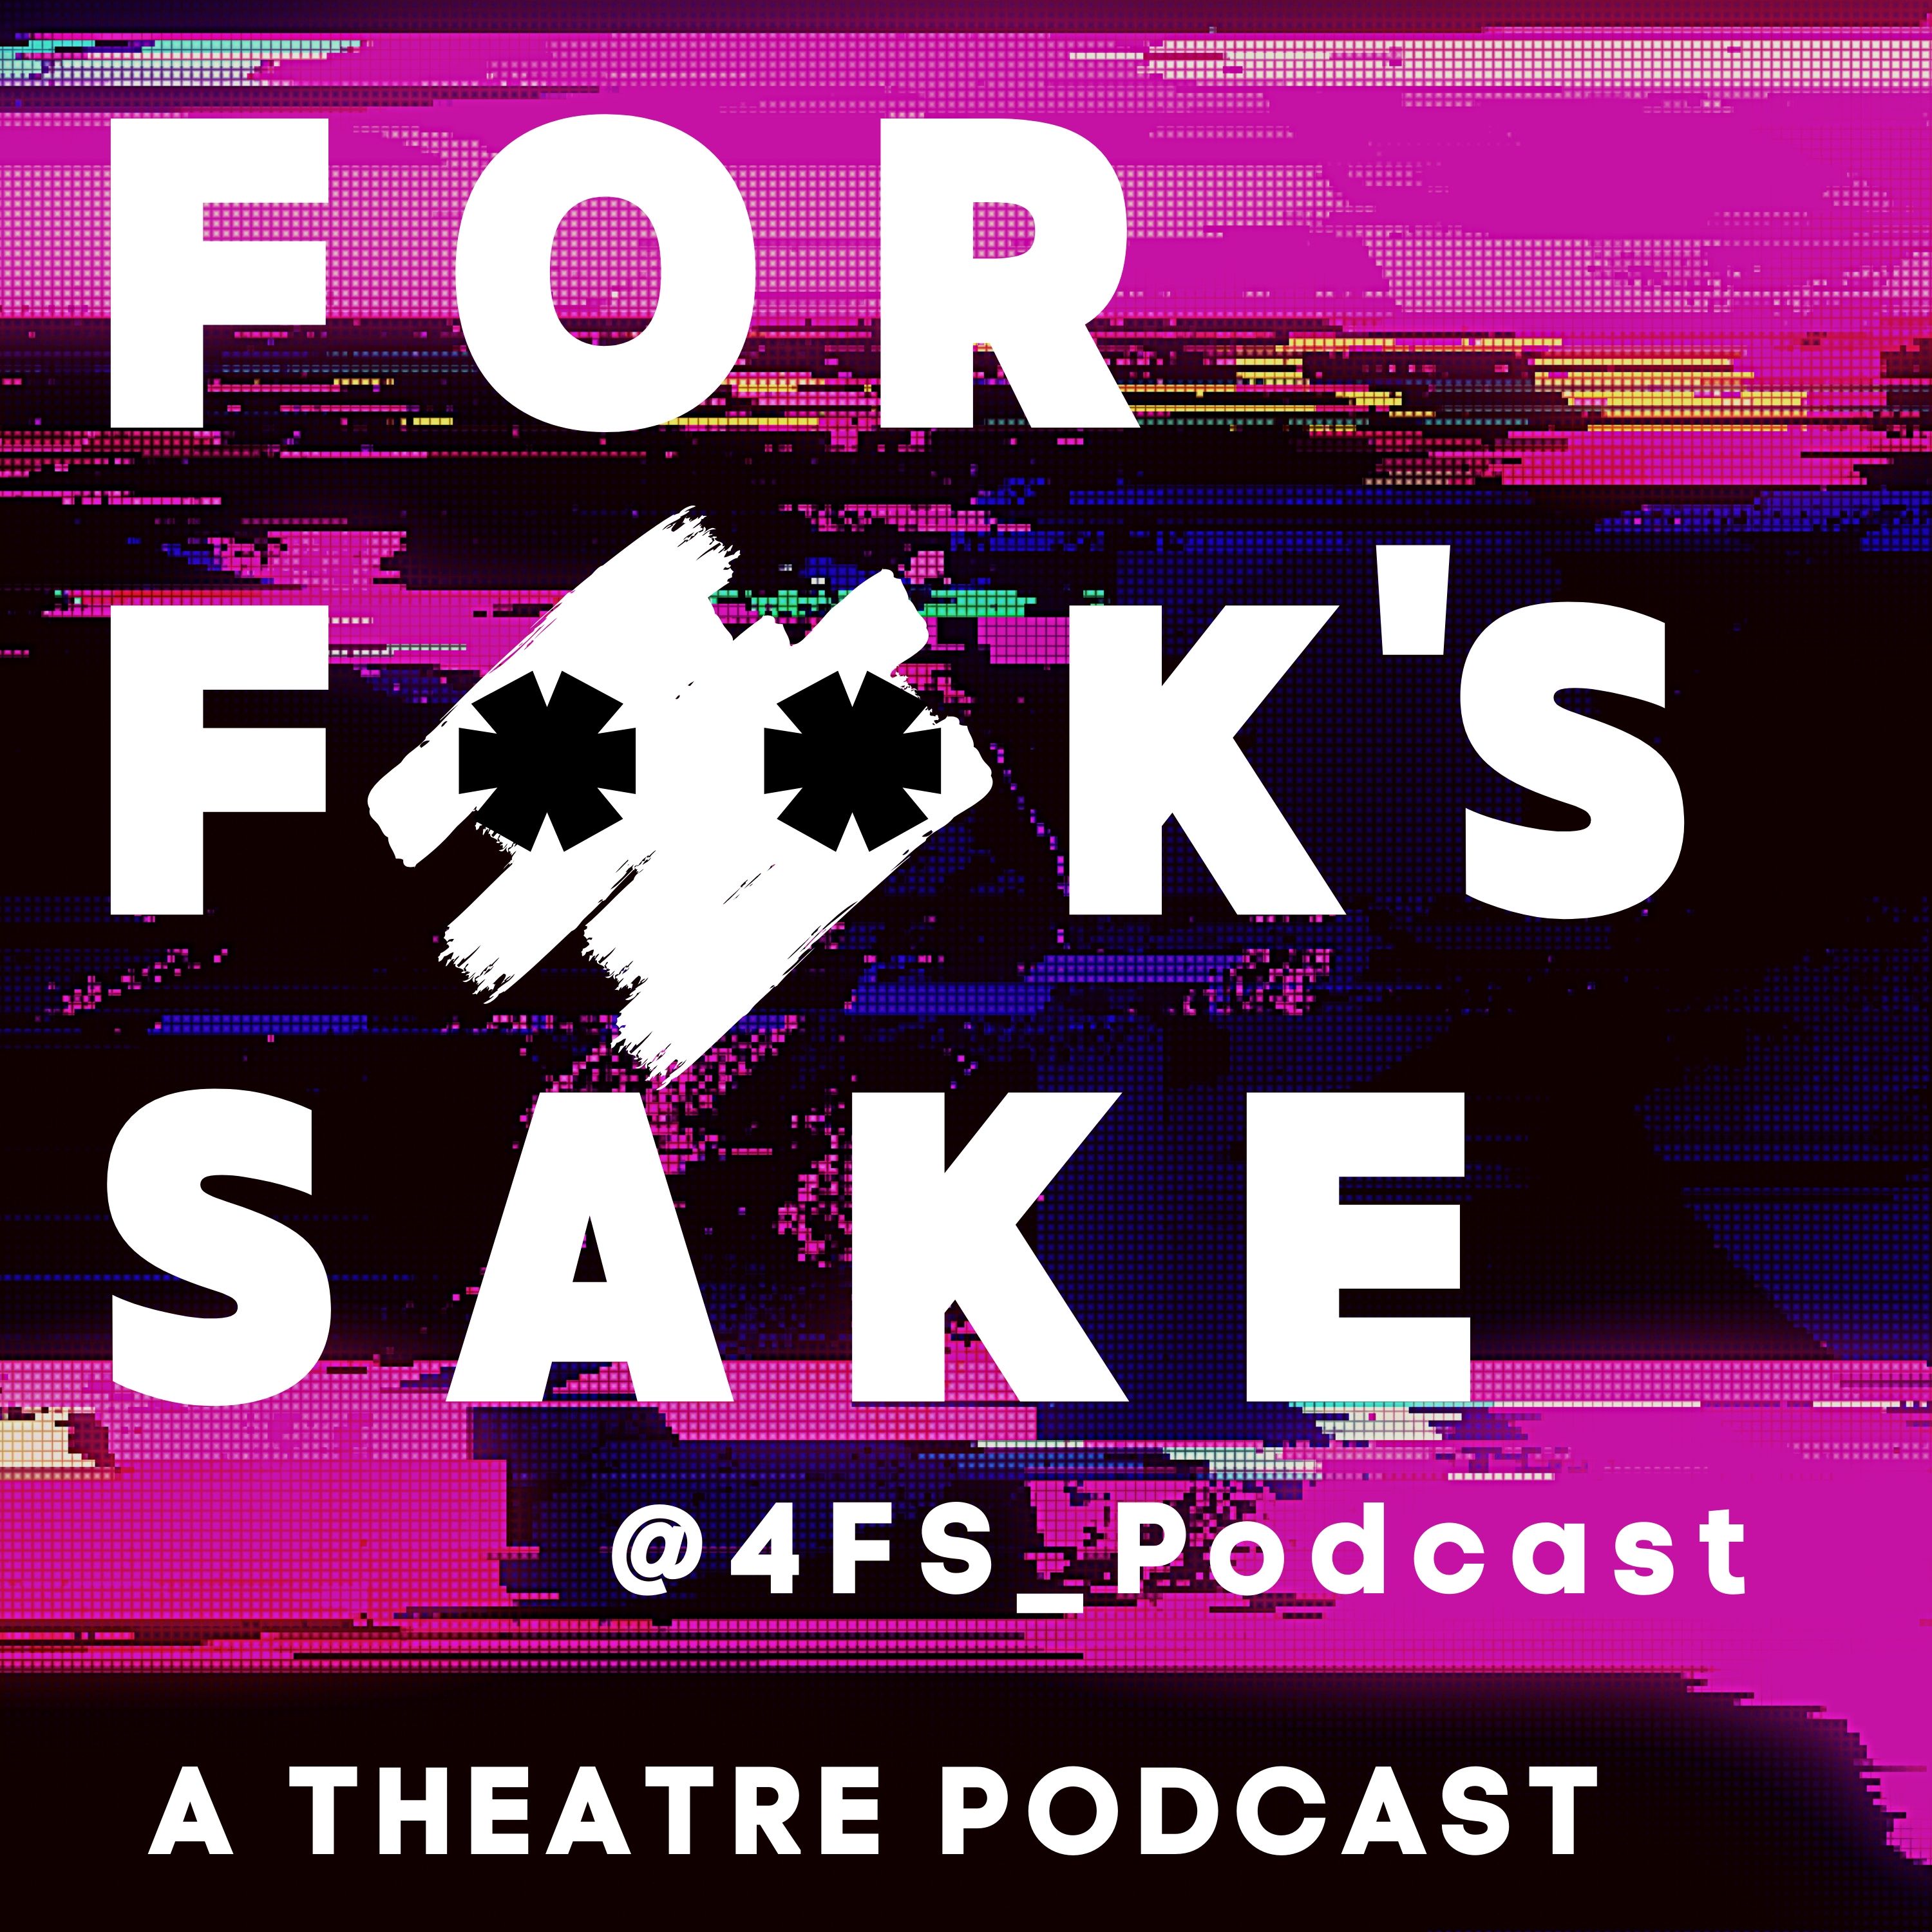 Artwork for podcast For Fuck's Sake "4FS_Podcast"